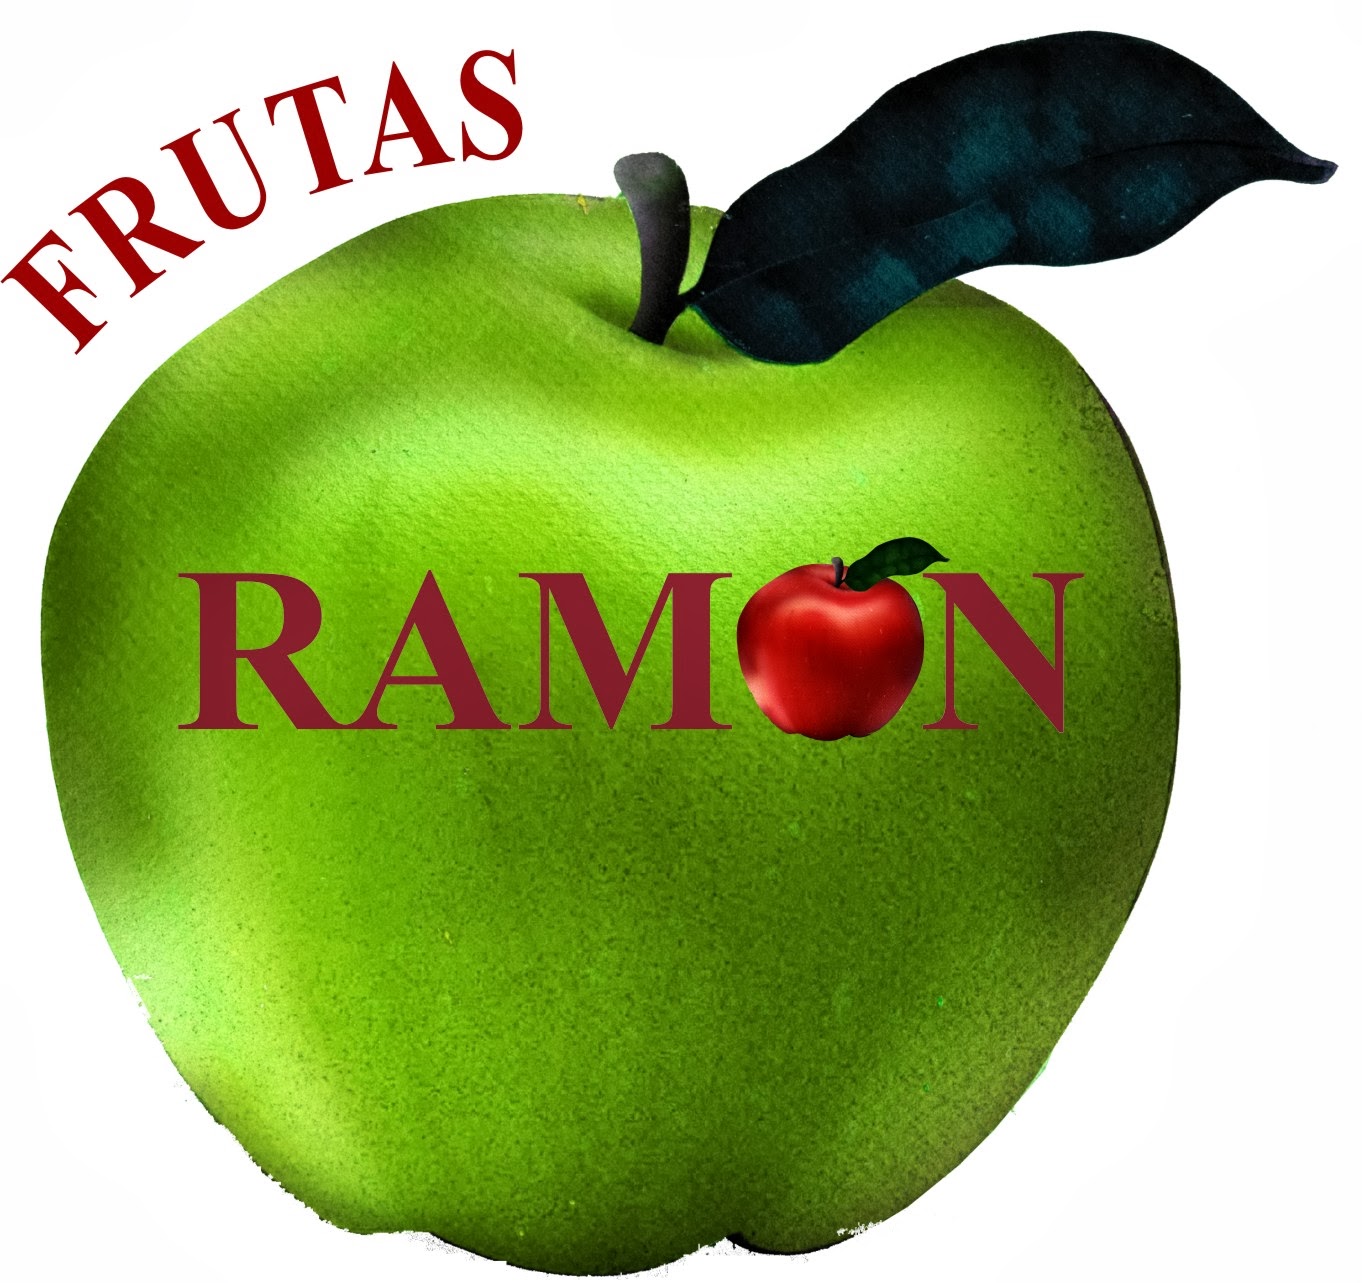 FRUTAS RAMON, yacht fruit & veg supplier. 